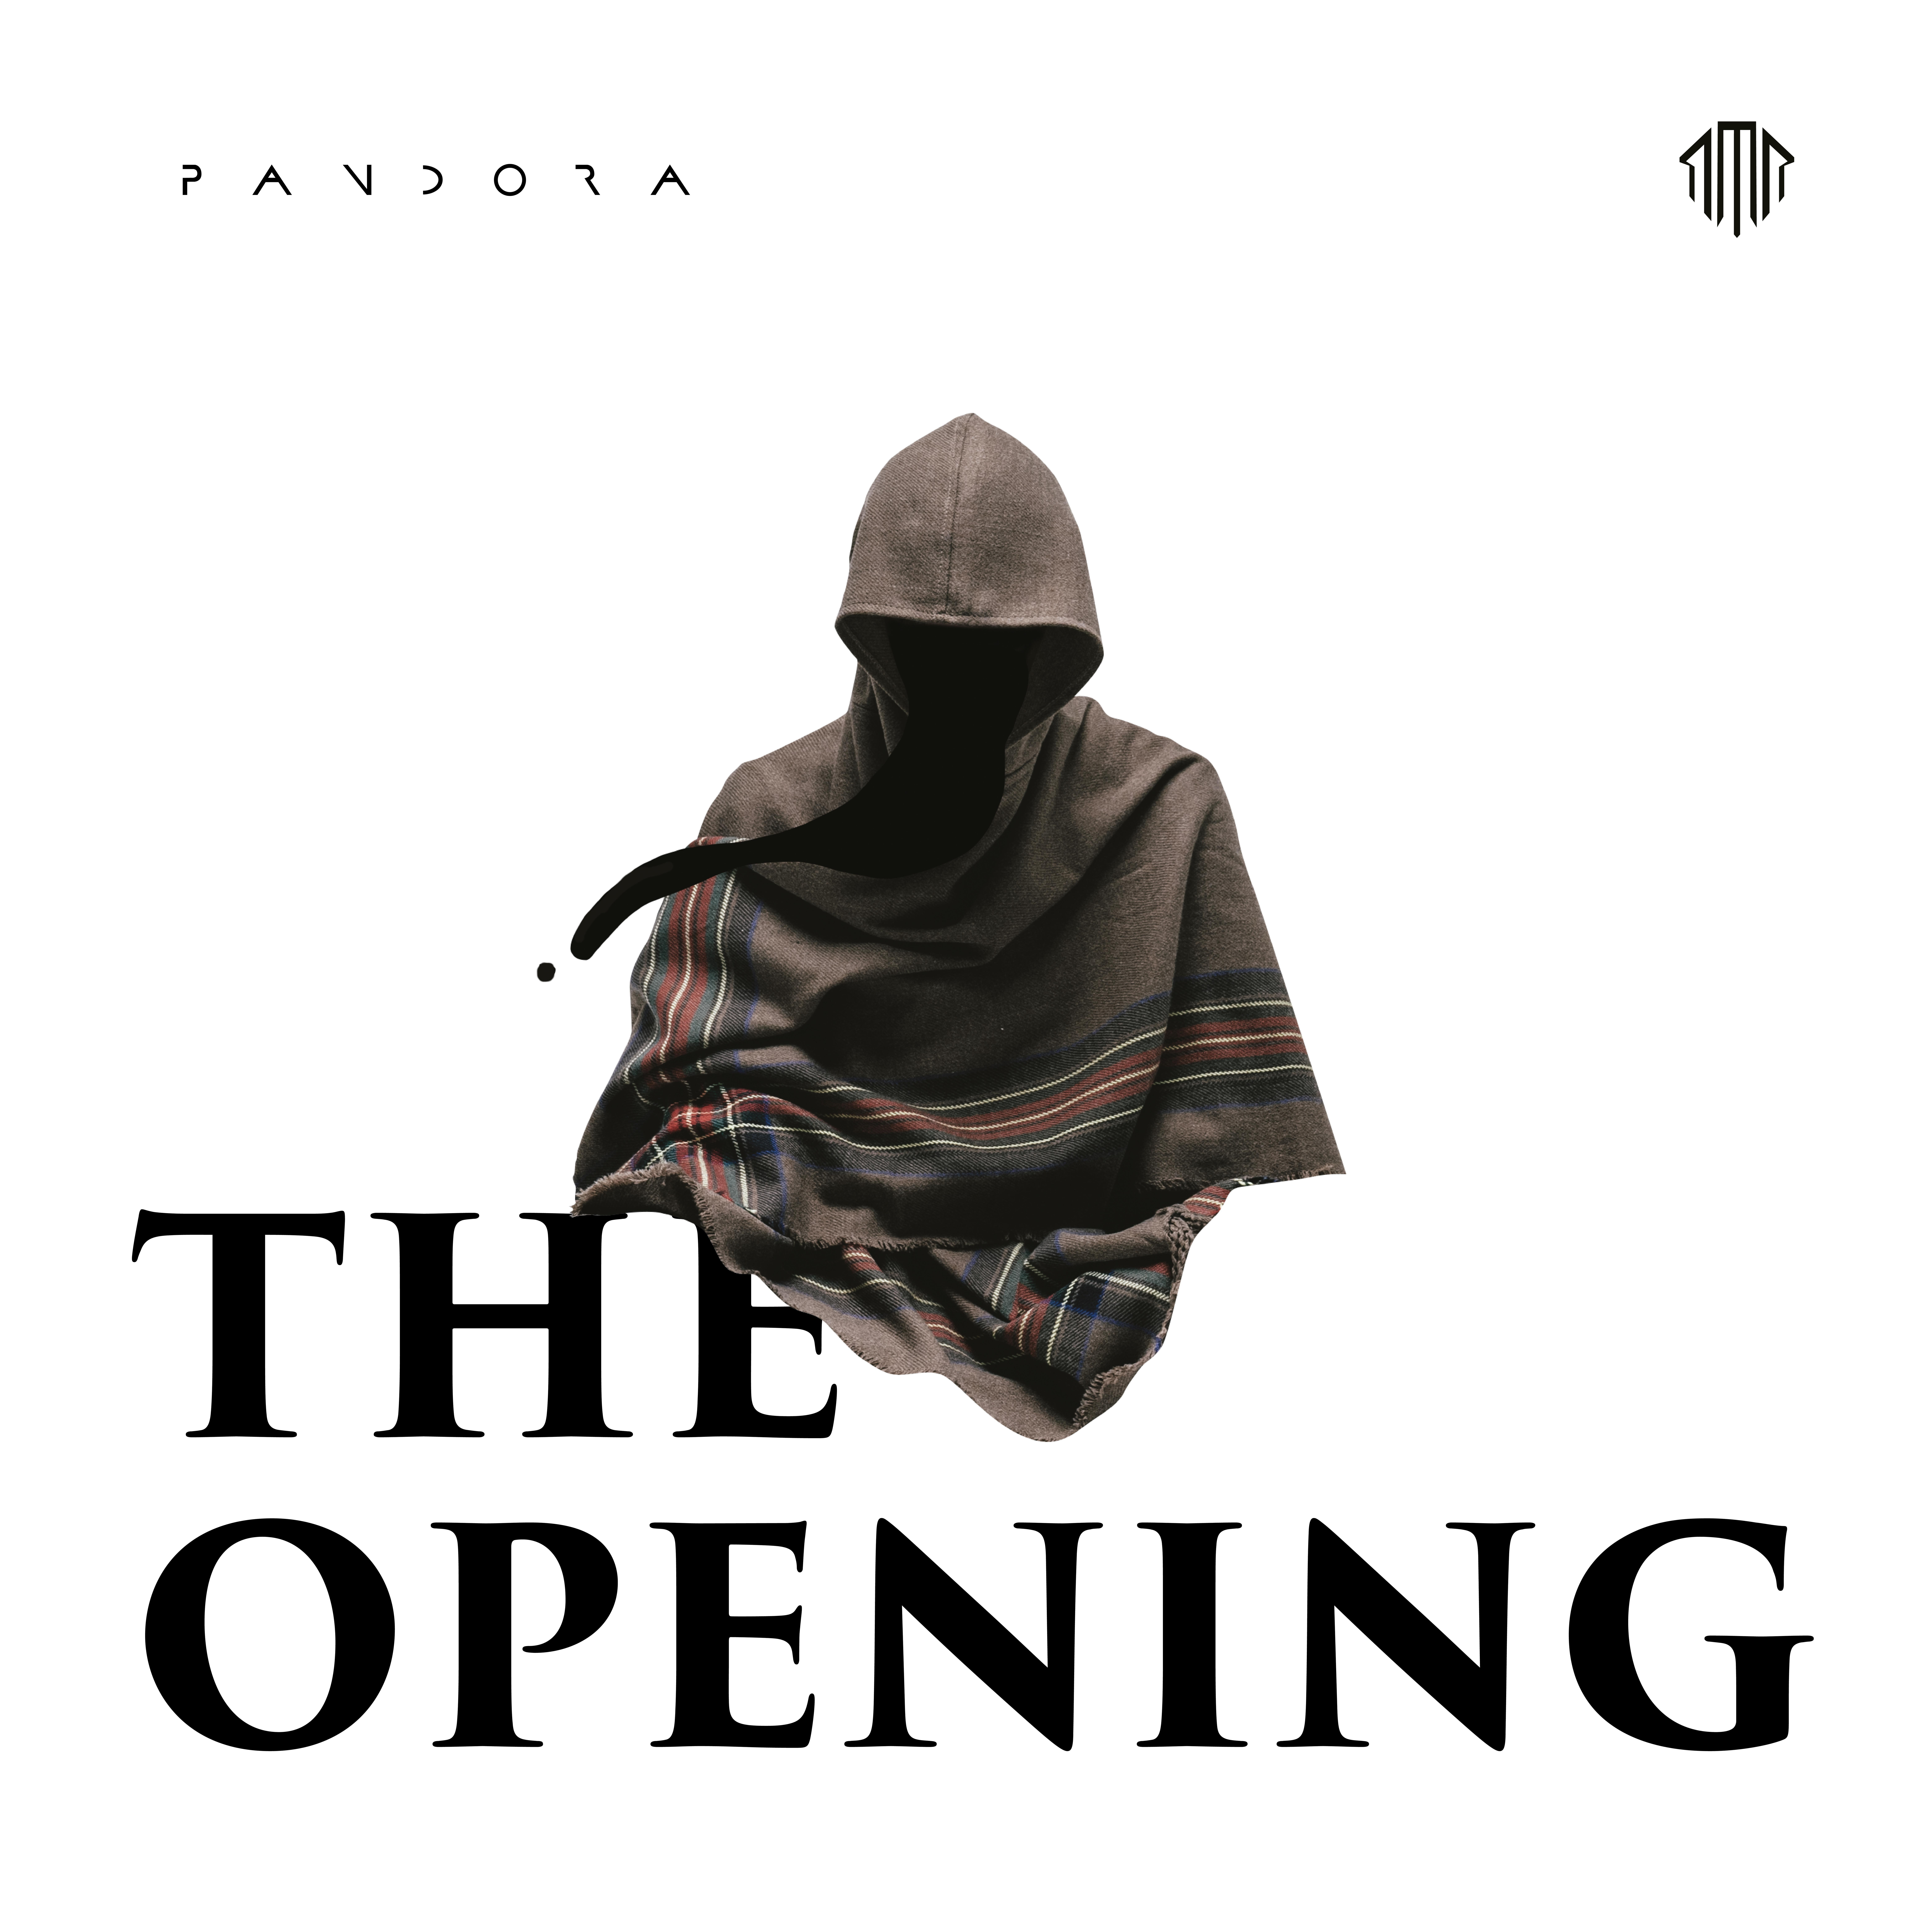 捉紧心跳歌词 歌手Pandora樂隊-专辑The Opening-单曲《捉紧心跳》LRC歌词下载